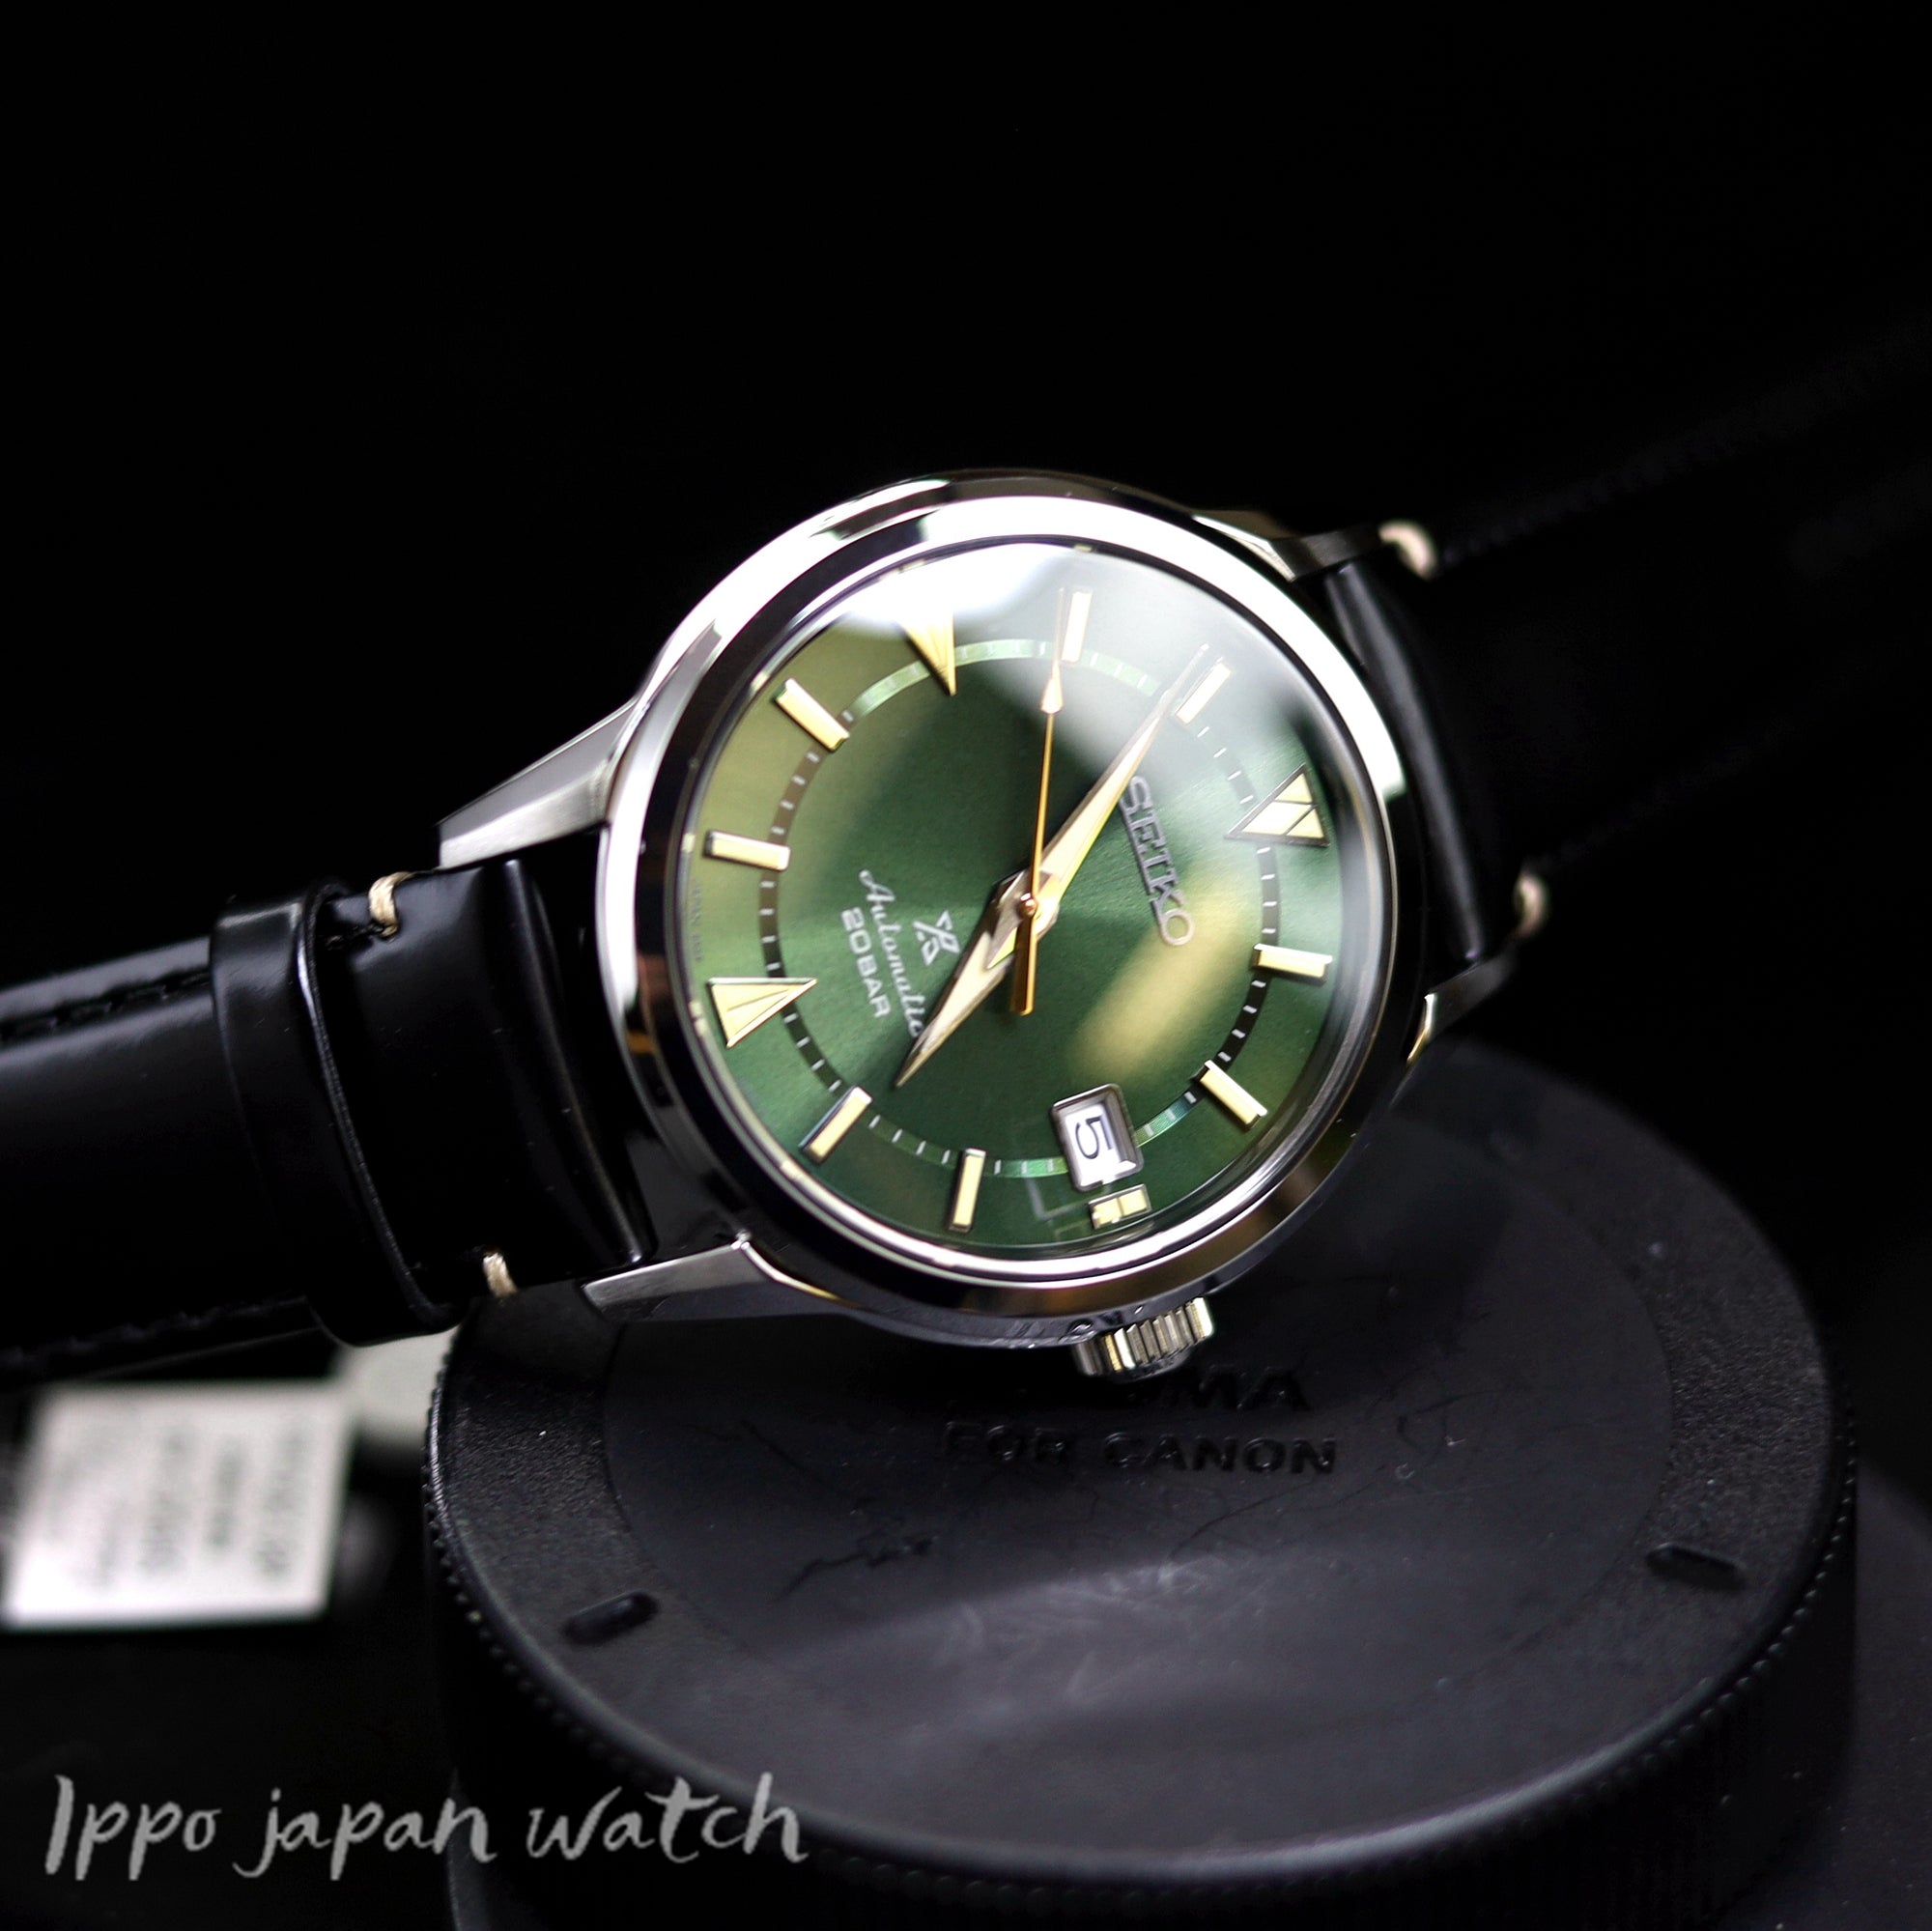 Seiko Prospex SBDC149 SPB245J1 Automatic 20 bar watch – IPPO JAPAN WATCH